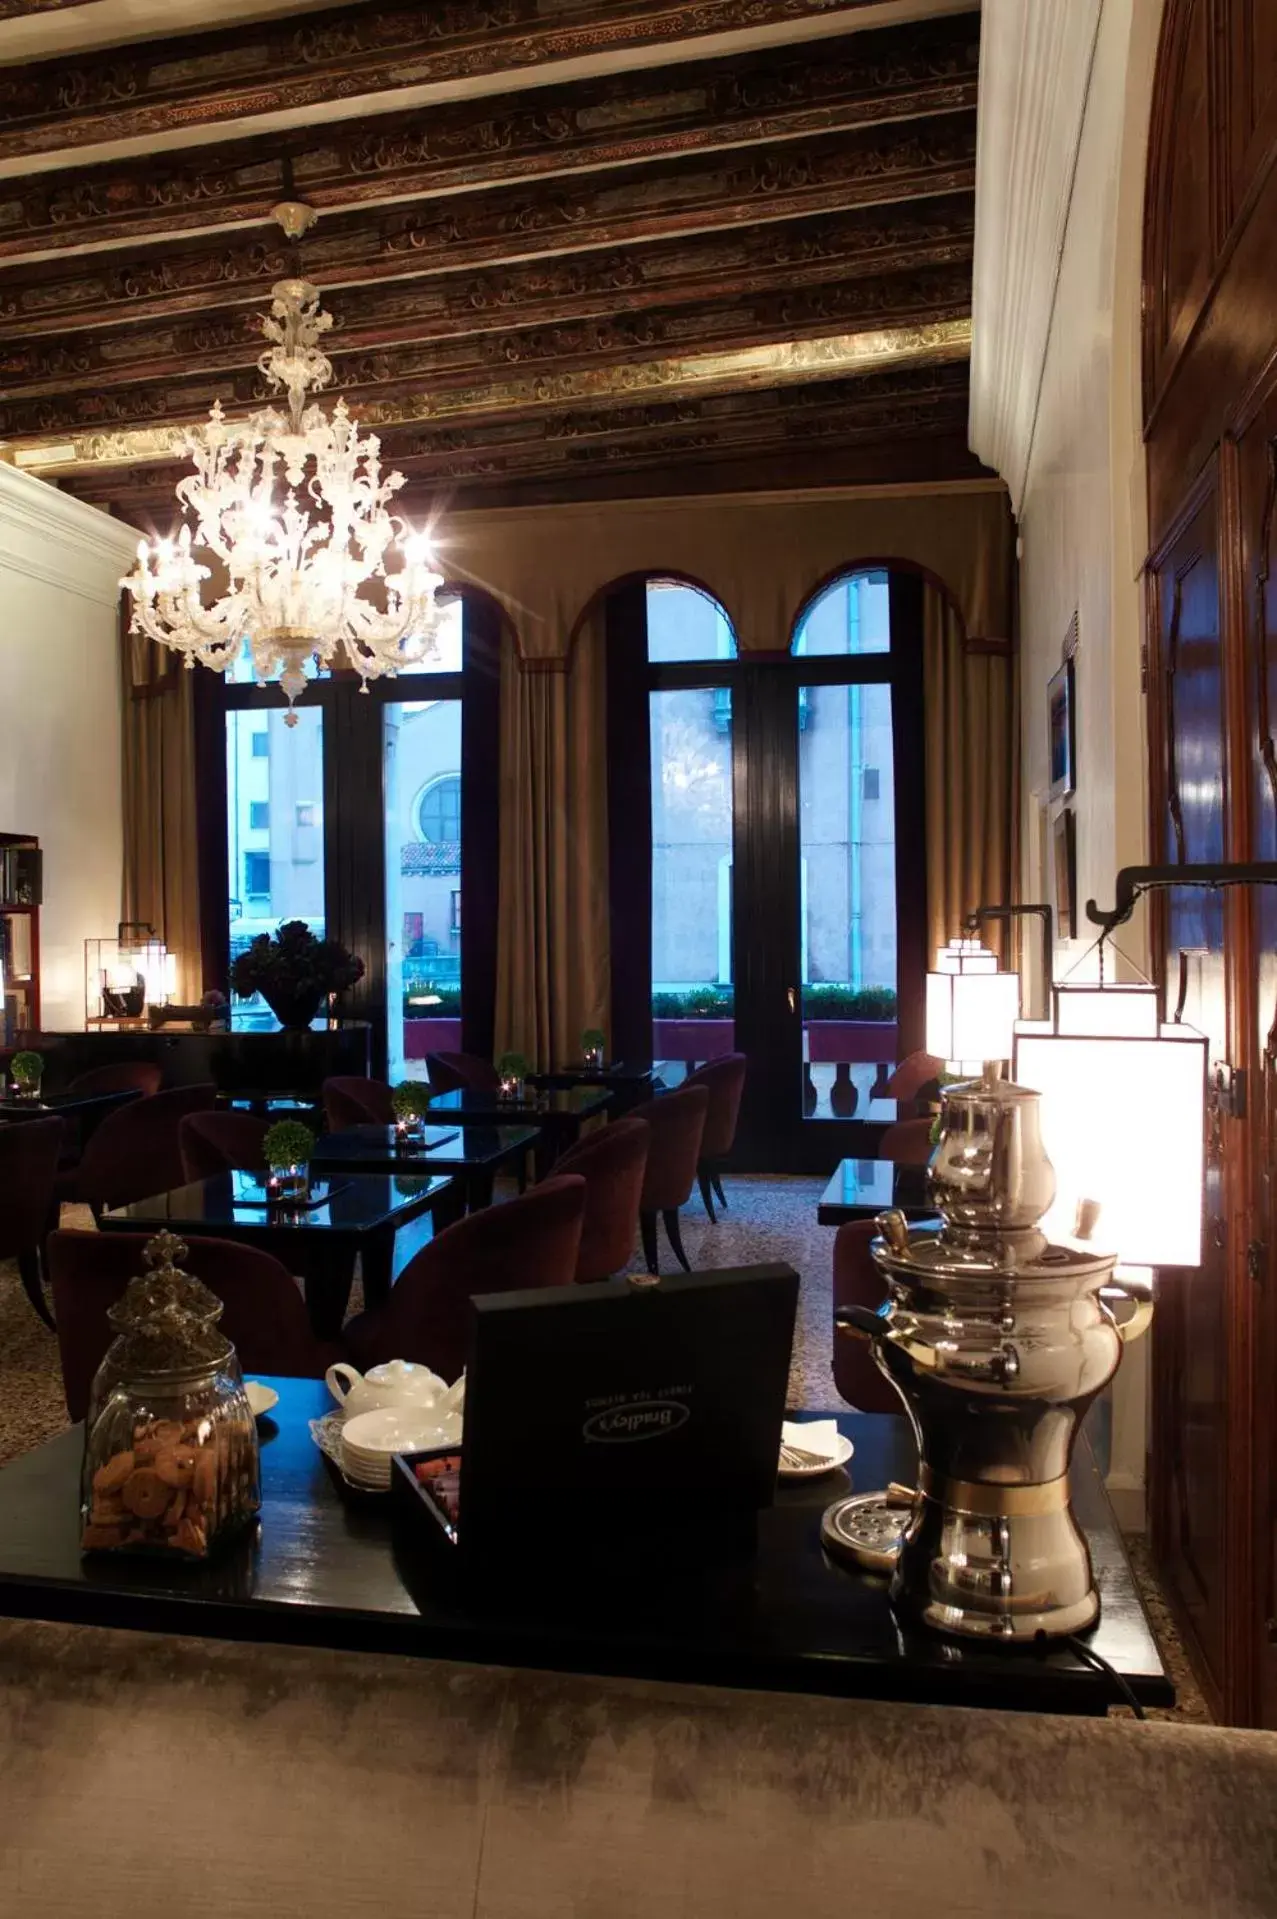 Lobby or reception in Ca' Gottardi